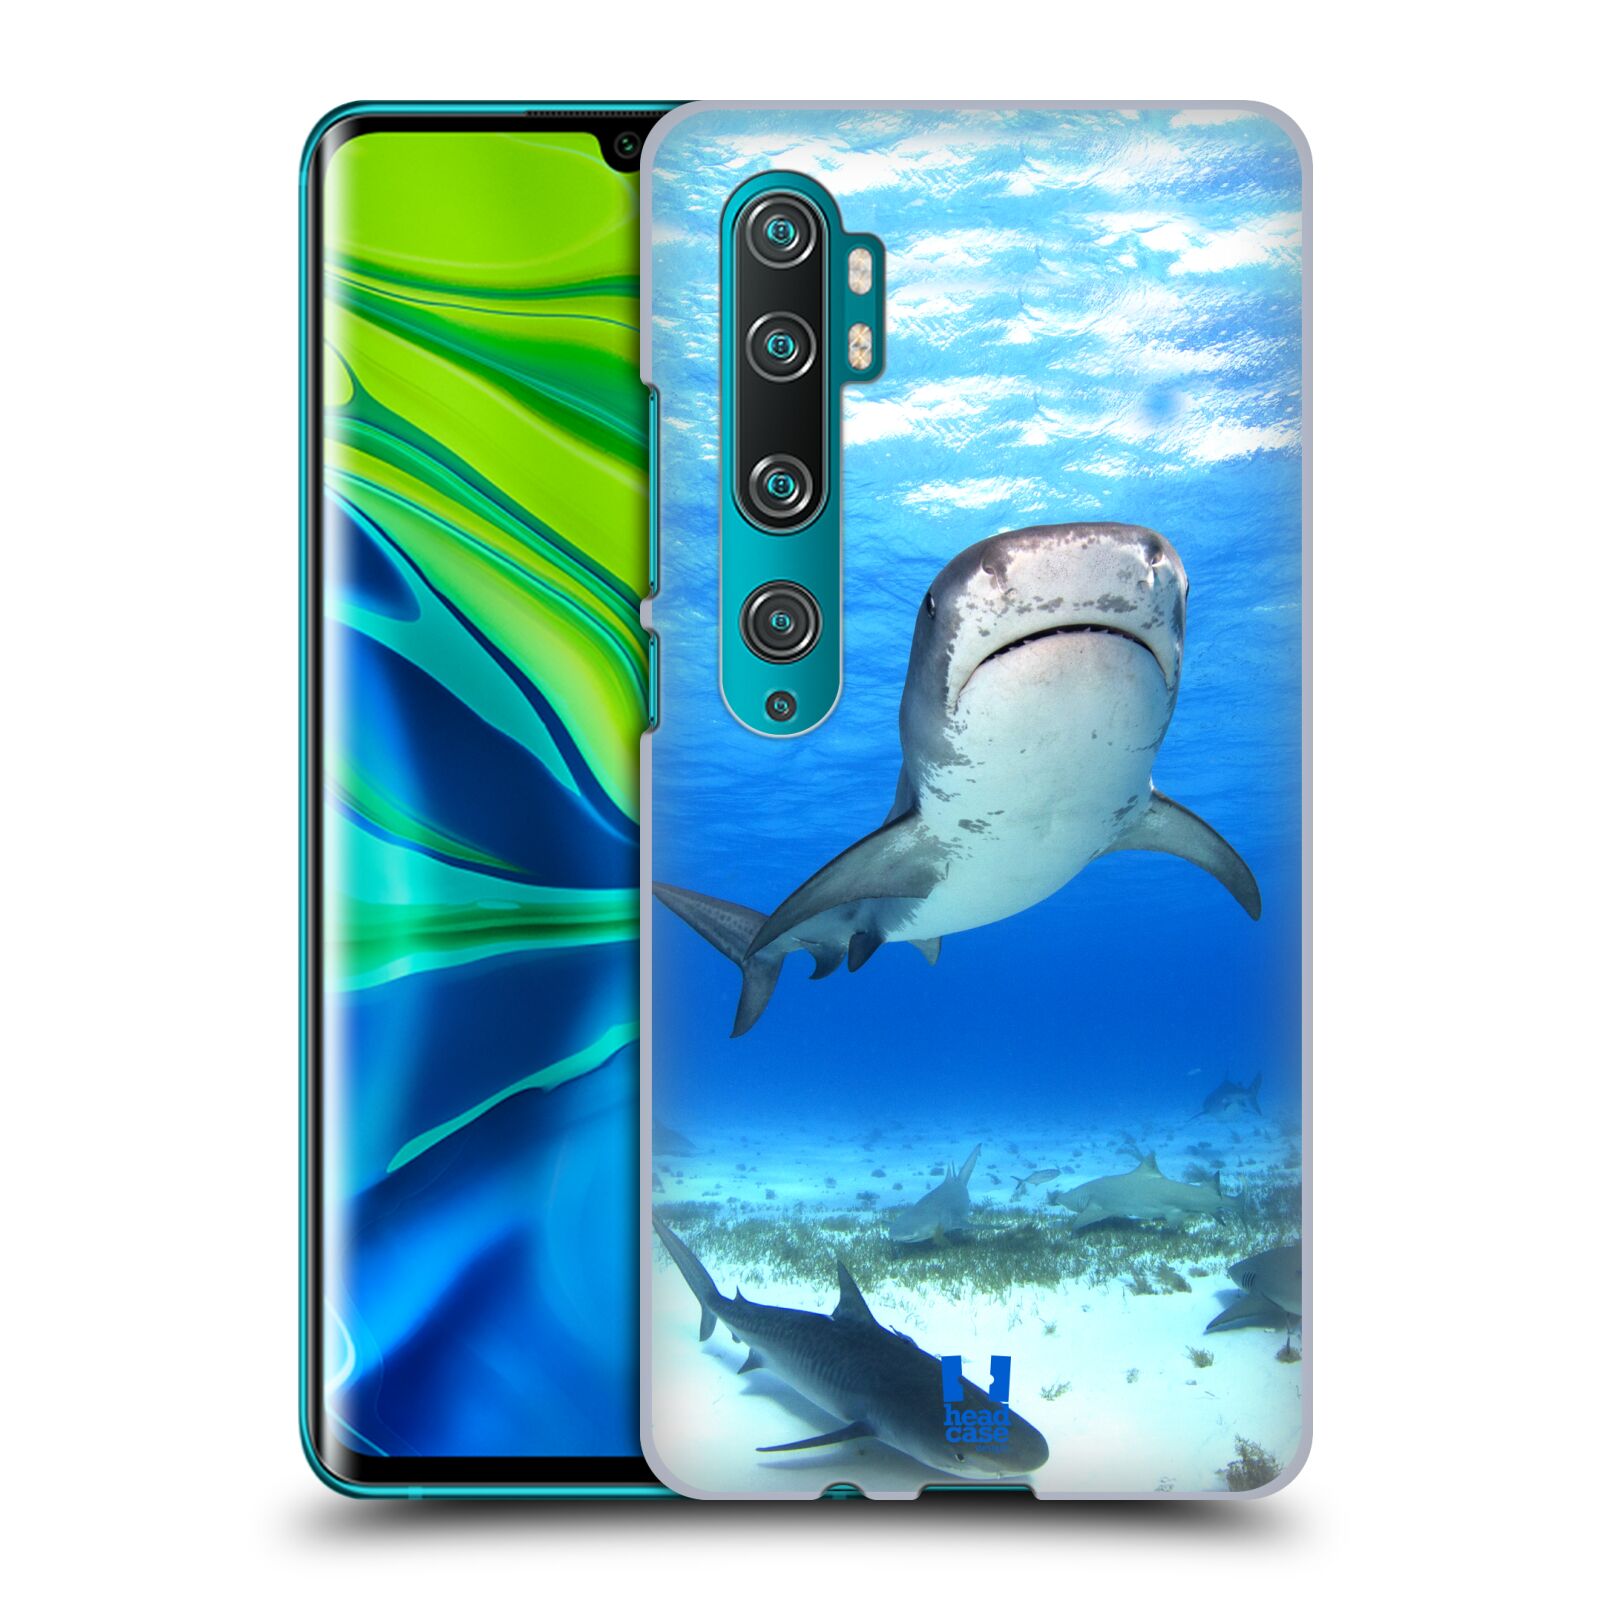 Pouzdro na mobil Xiaomi Mi Note 10 / Mi Note 10 PRO - HEAD CASE - vzor slavná zvířata foto žralok tygří